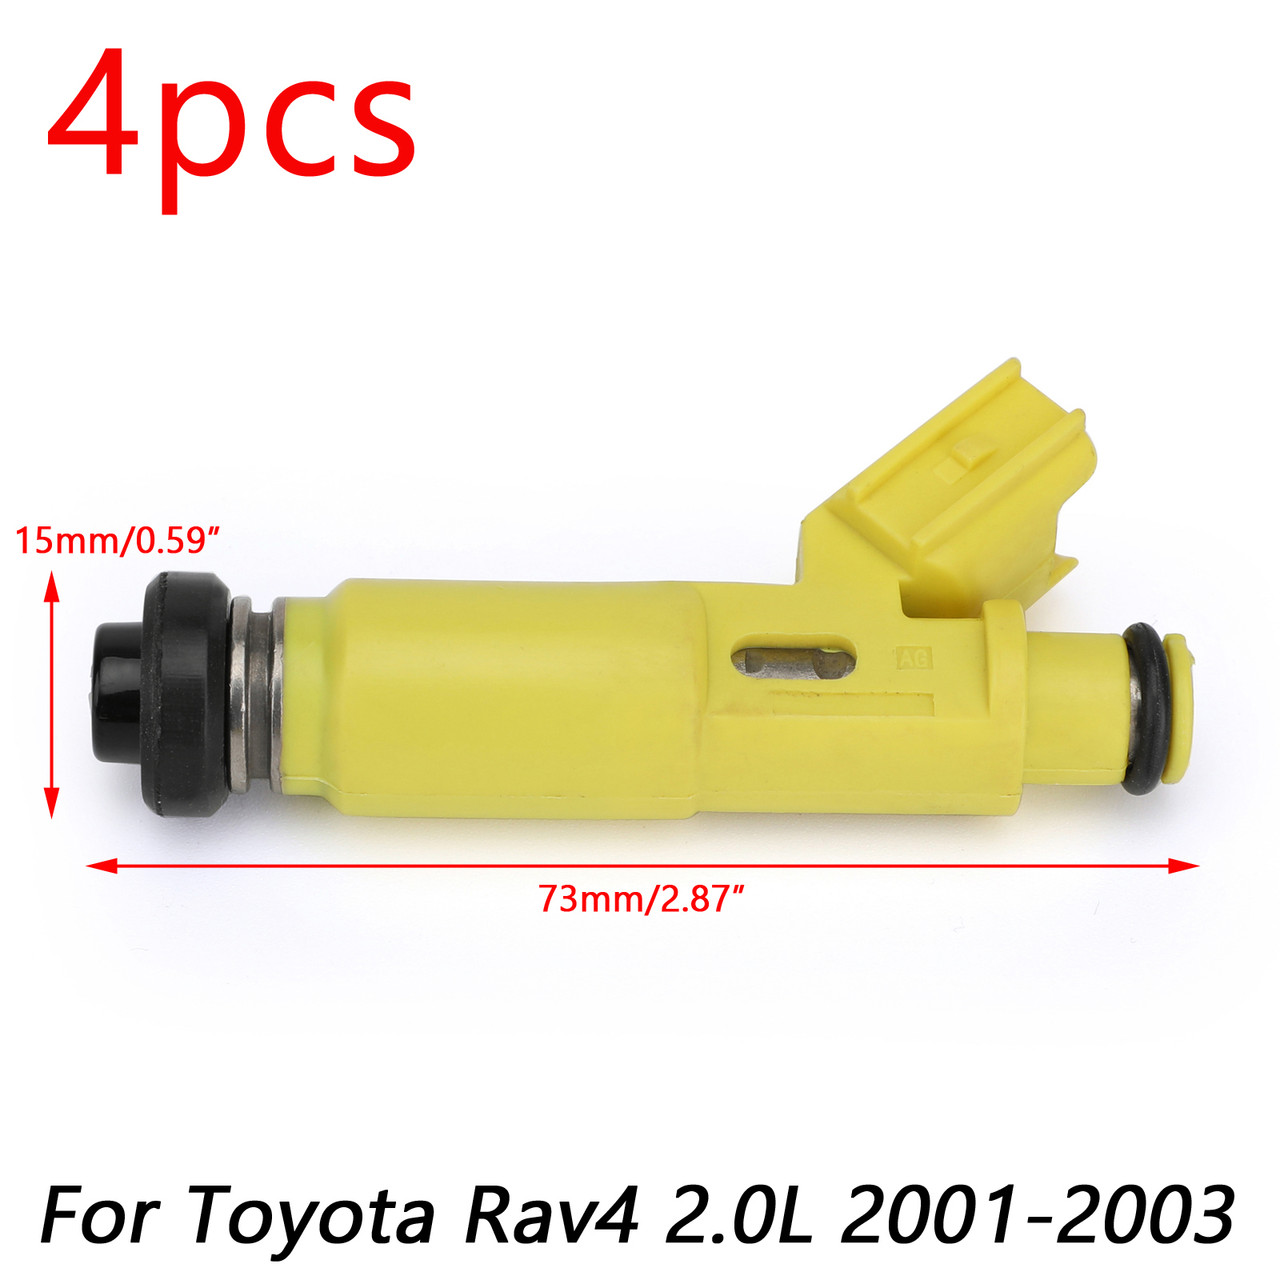 4Pcs Fuel Injectors 23250-28050 Fit For Toyota Rav4 2.0L 2001-2003